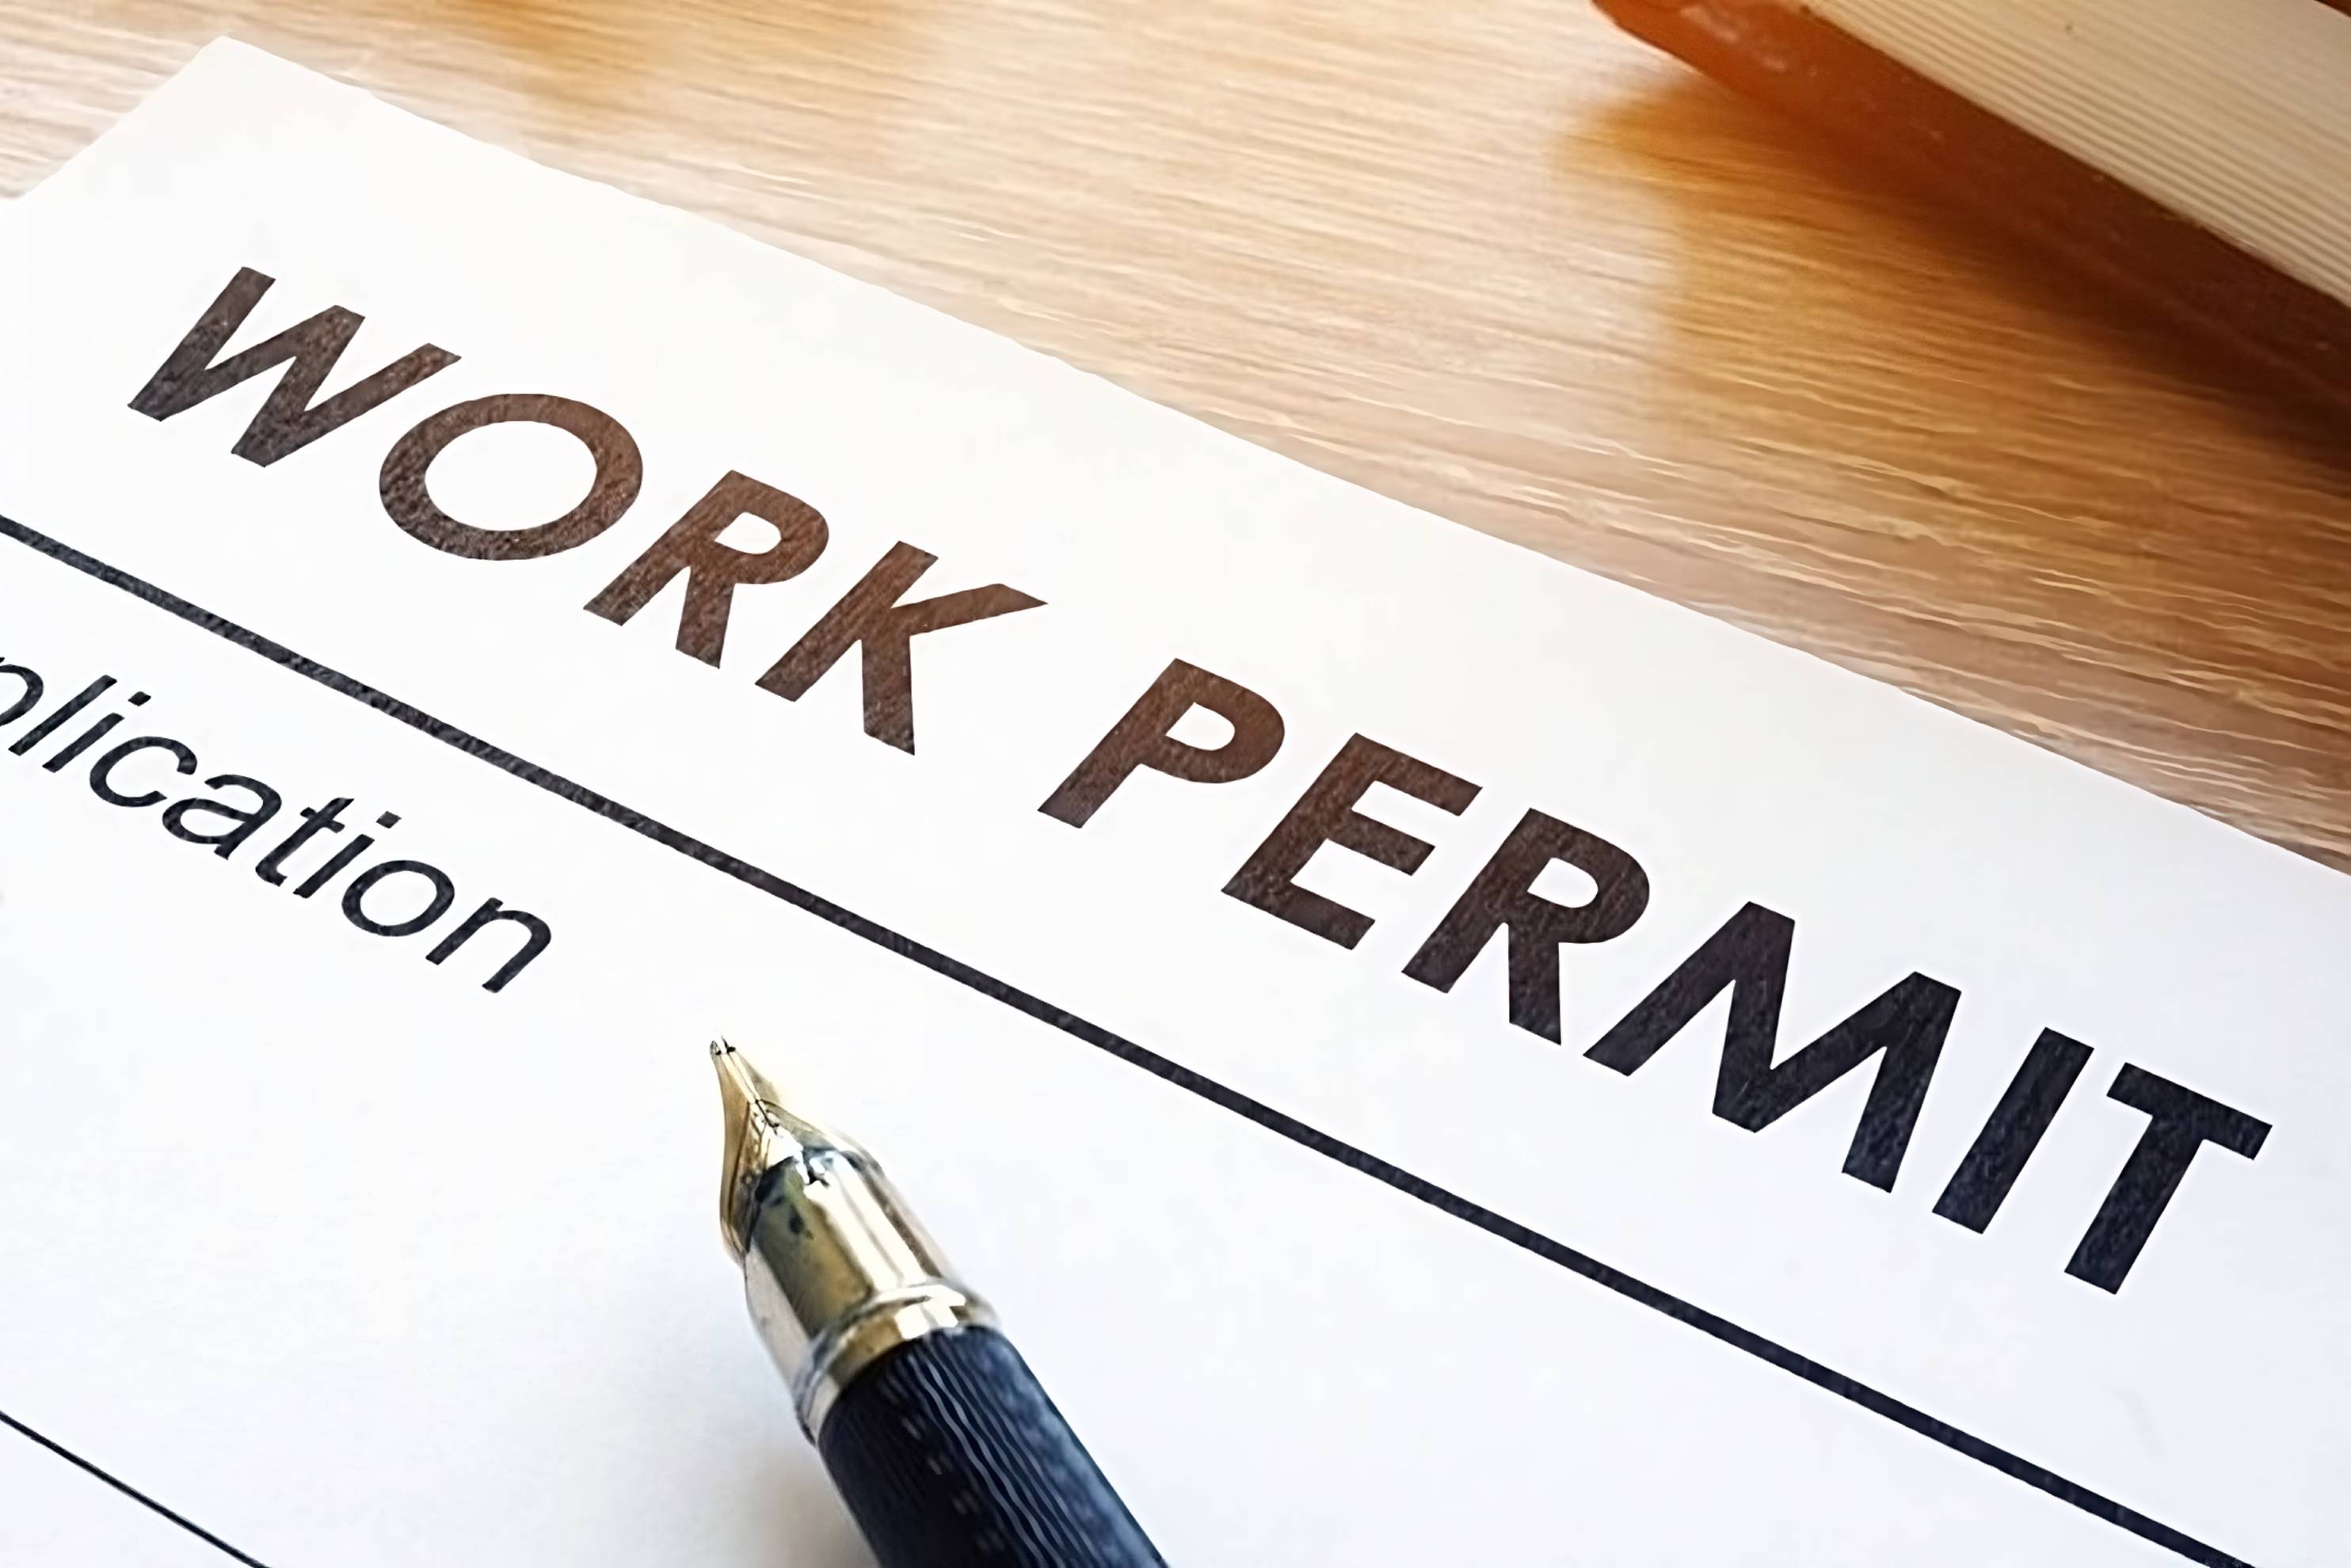 Work-Permit